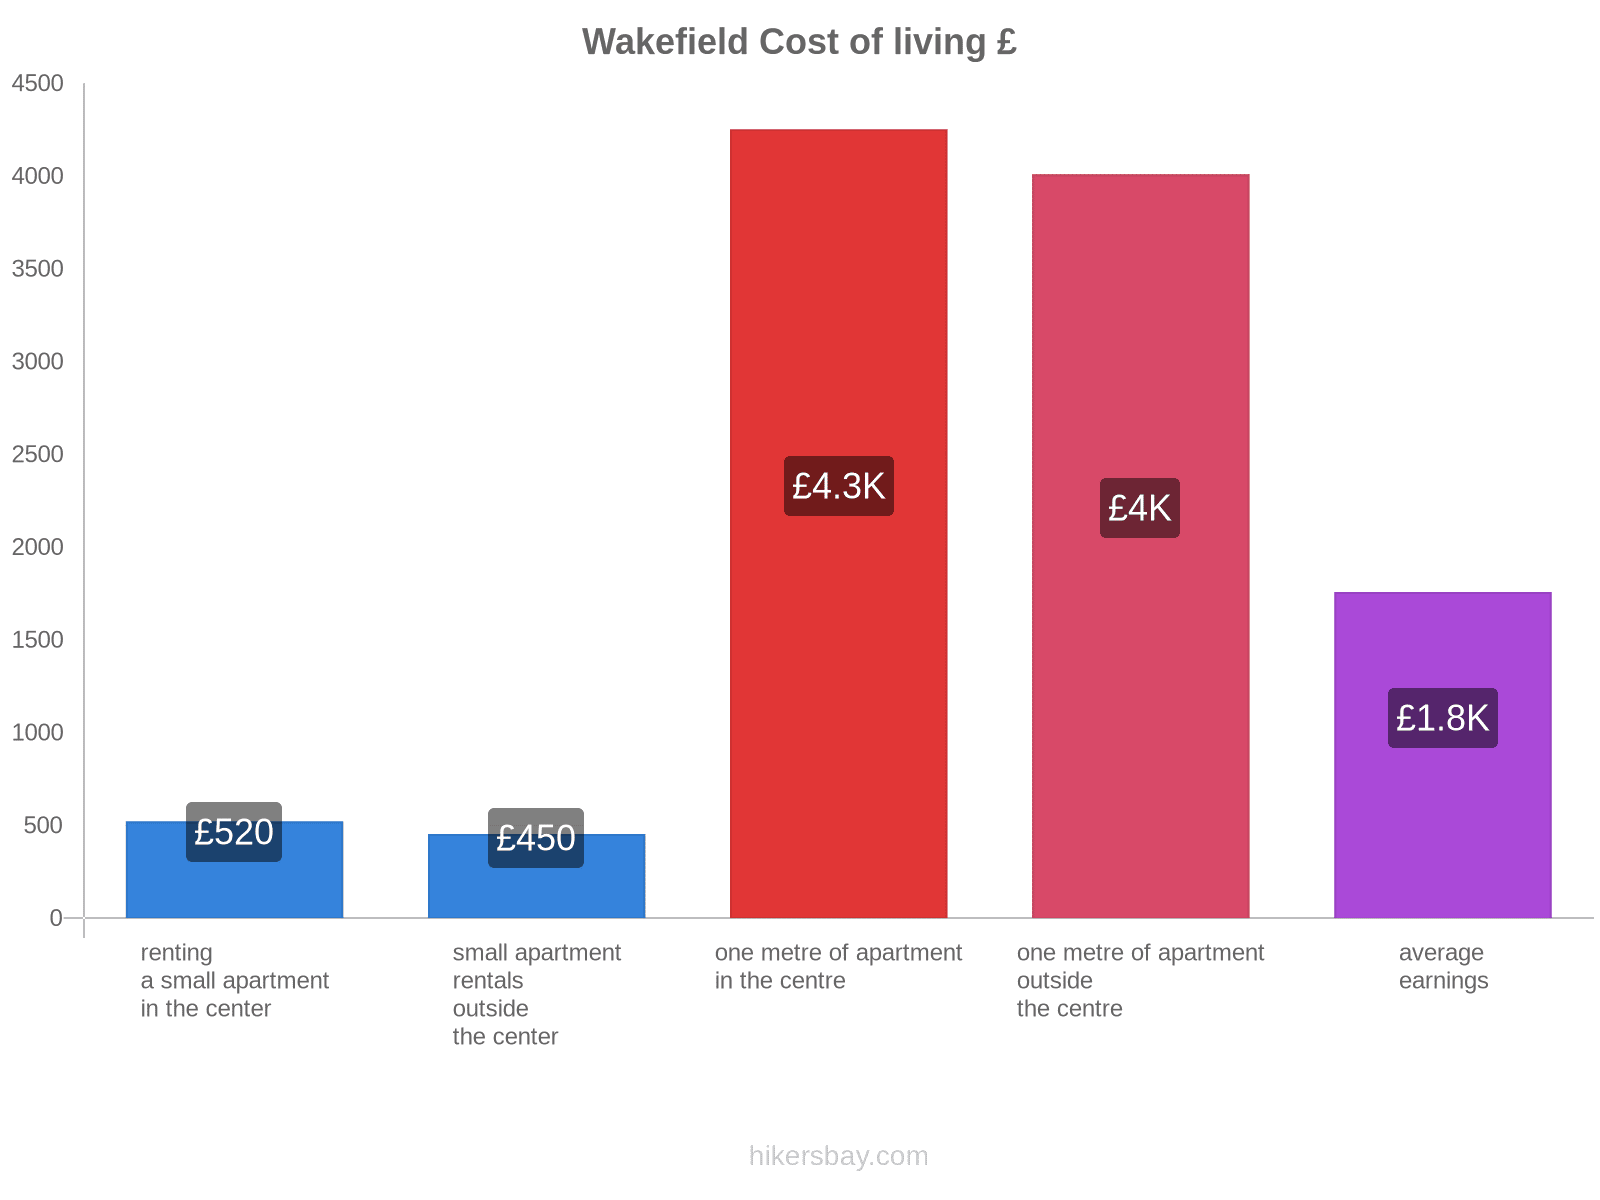 Wakefield cost of living hikersbay.com